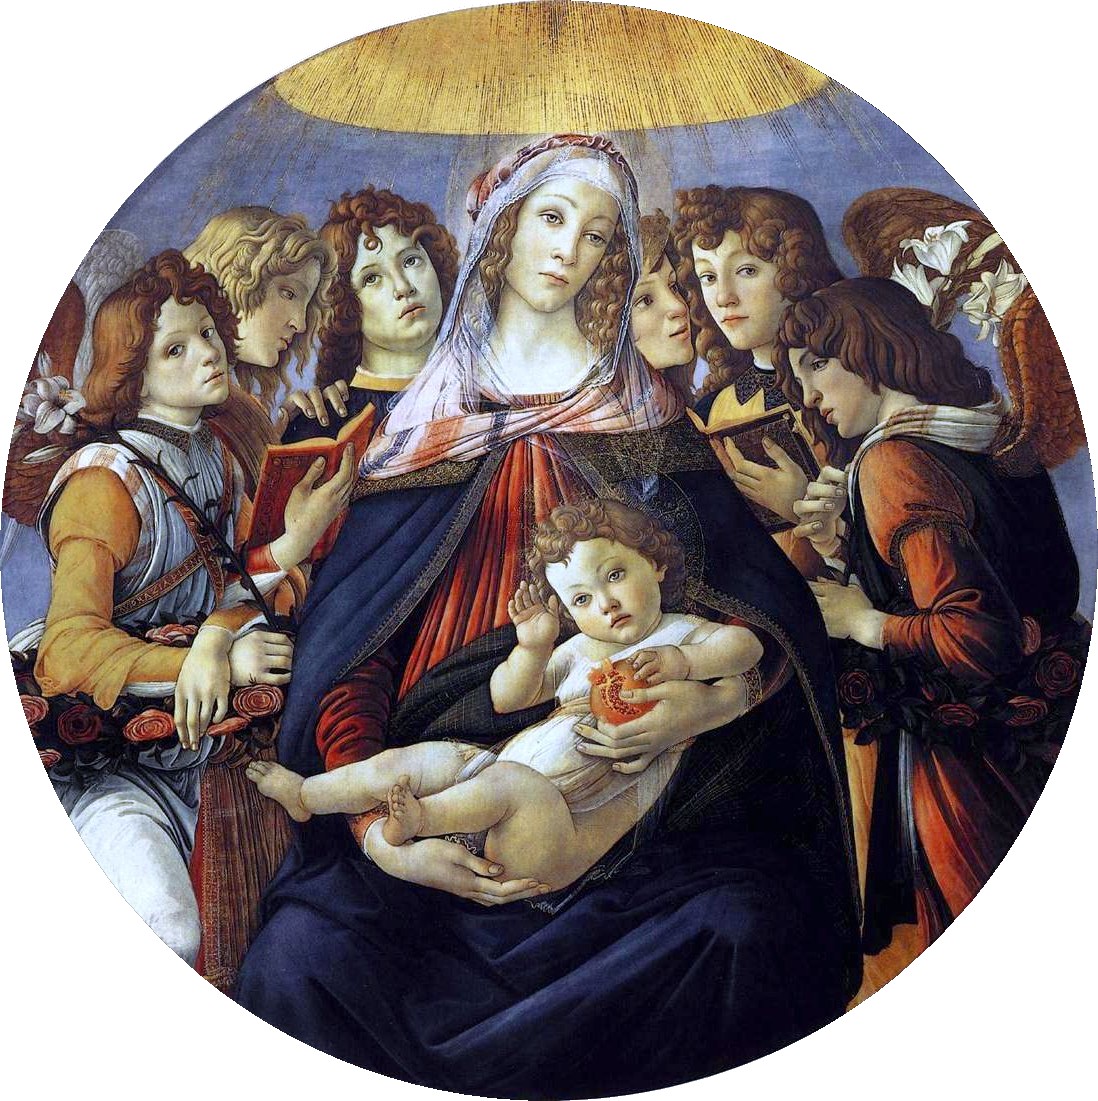 Madonna of the Pomegranate (Madonna della Melagrana) by Sandro Botticelli, circa 1487